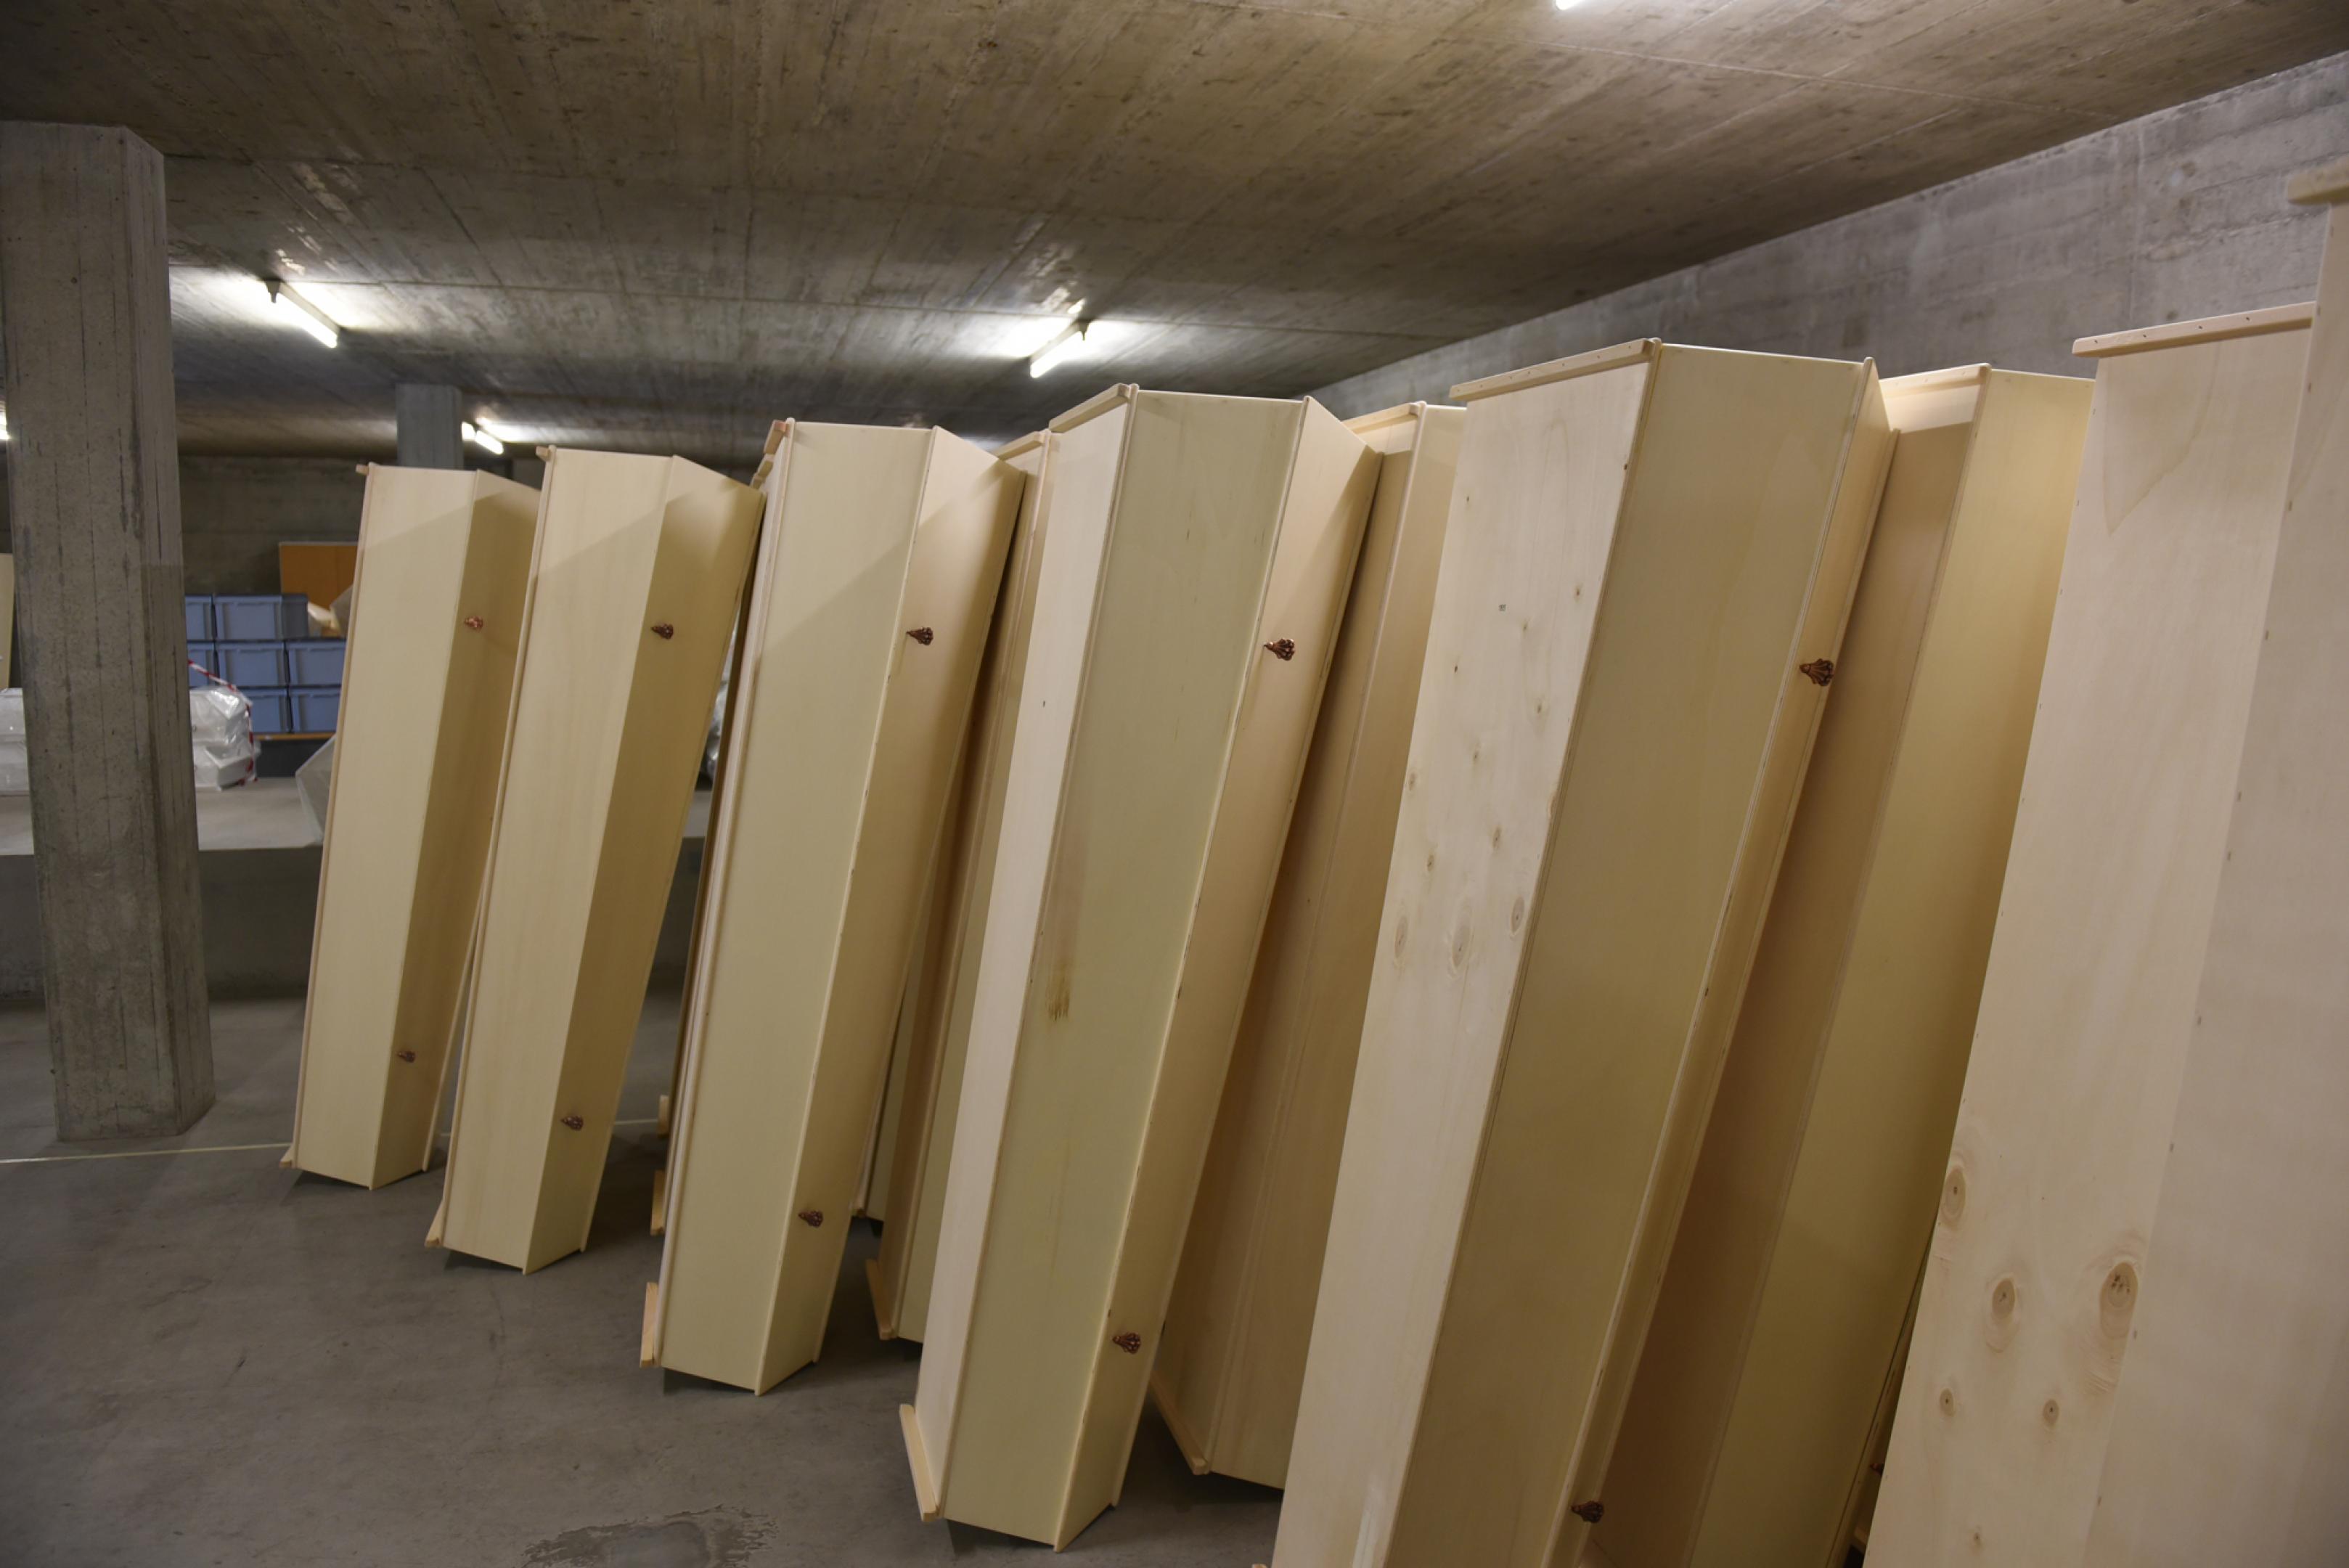 2016 verstarben alleine 3157 Stadtzürcher. Sie haben alle einen Züri-Sarg, die in einer integrativen Werkstatt gezimmert werden, zugute. Diese stehen im Sarglager – neben Modellen aus Edelholz und goldigen Verzierungen – bereit.